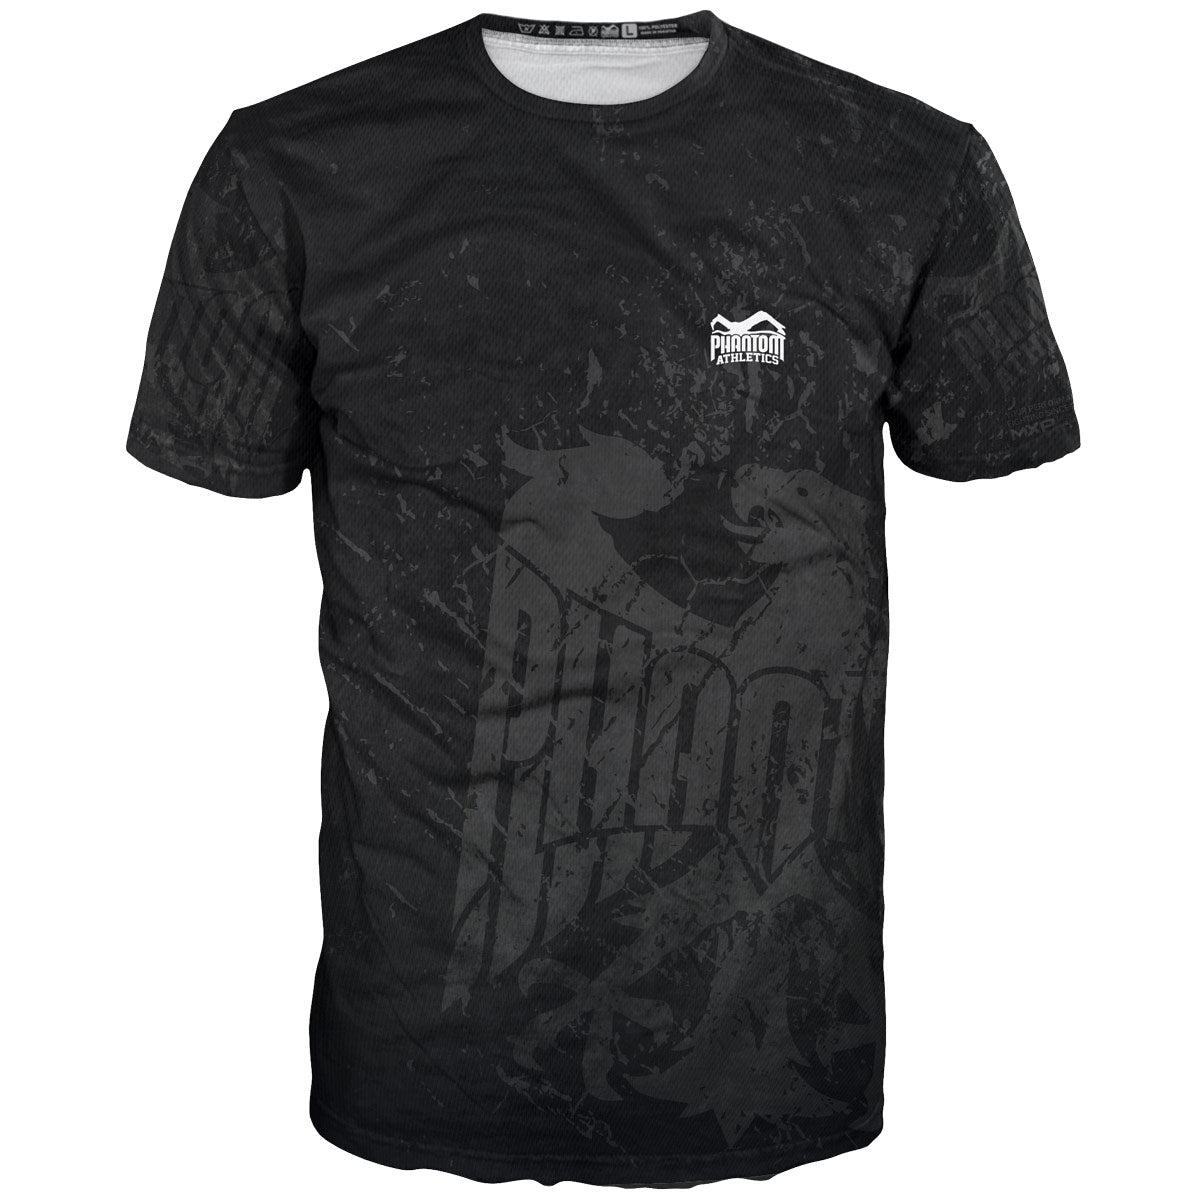 Phantom EVO treniņcīņas krekls Team Germany dizainā. Ar Vācijas ērgli un uzrakstu "Never Back Down". Ideāli piemērots jūsu cīņas sporta veidiem, piemēram, MMA, Muay Thai, cīkstēšanās, BJJ vai kikboksam.